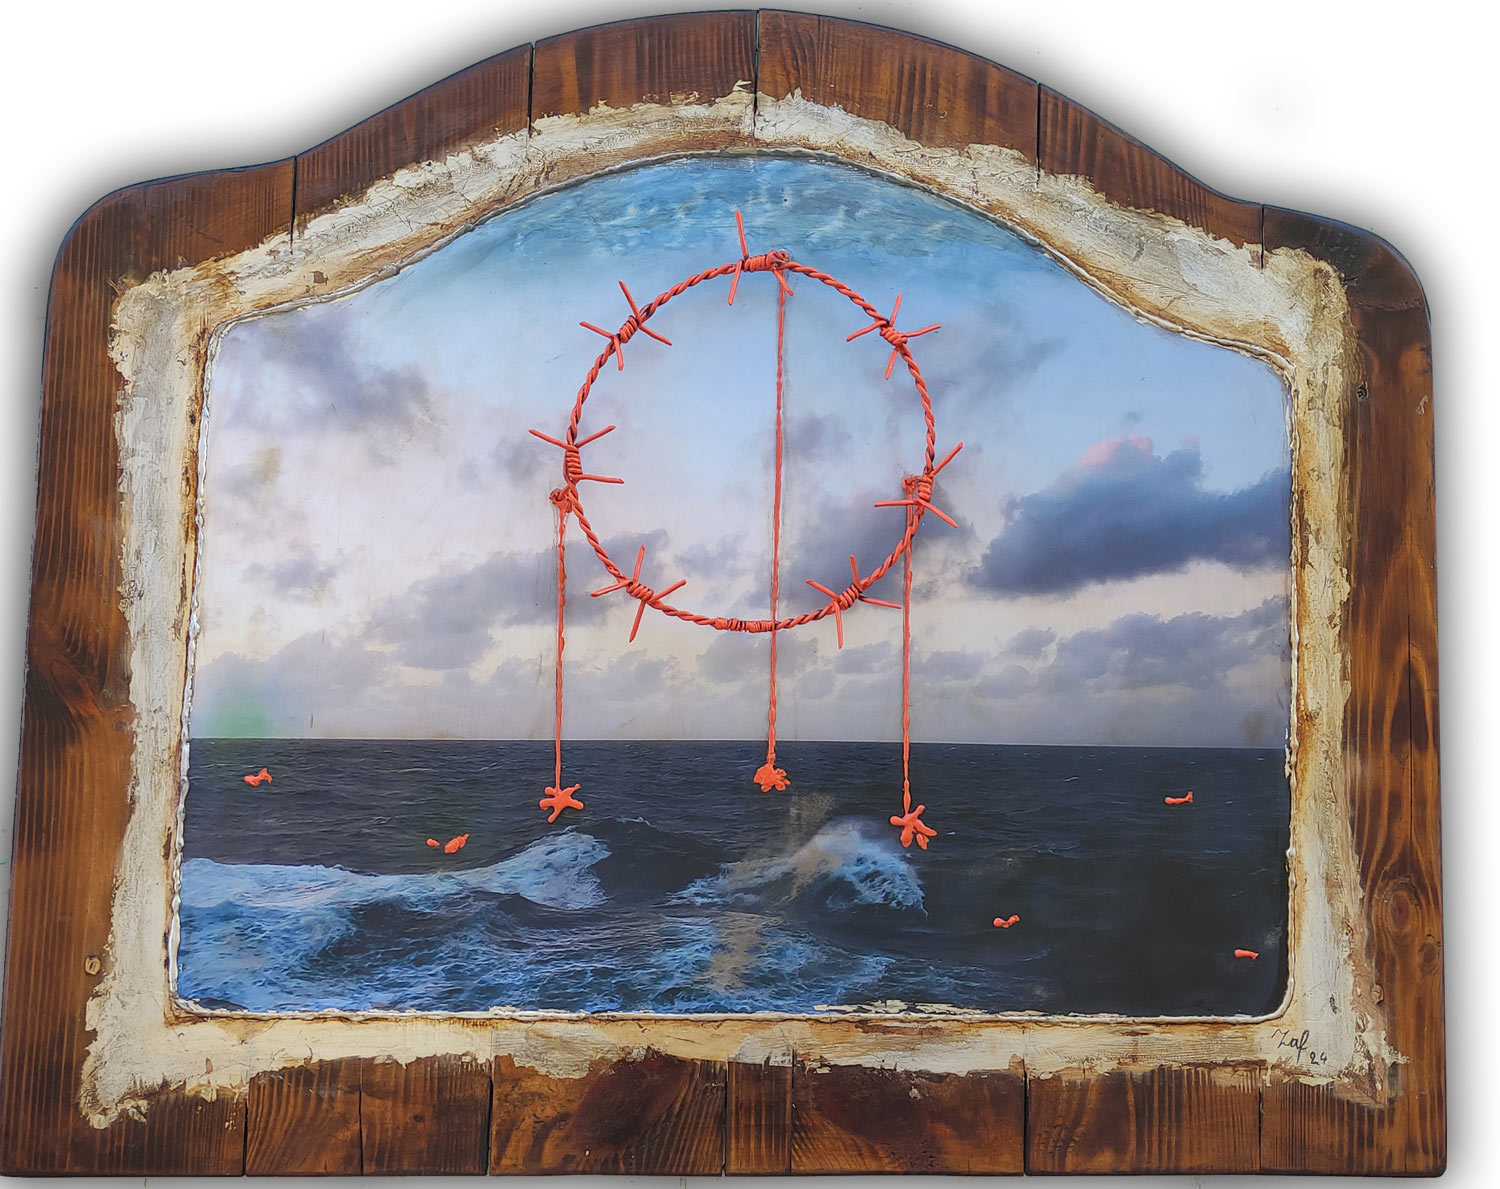 Στην εικόνα εμφανίζεται, φρουρτουνιασμένη θάλασσα και στο κέντρο ένα αγαθοτό συρμάτινο στεφάνι